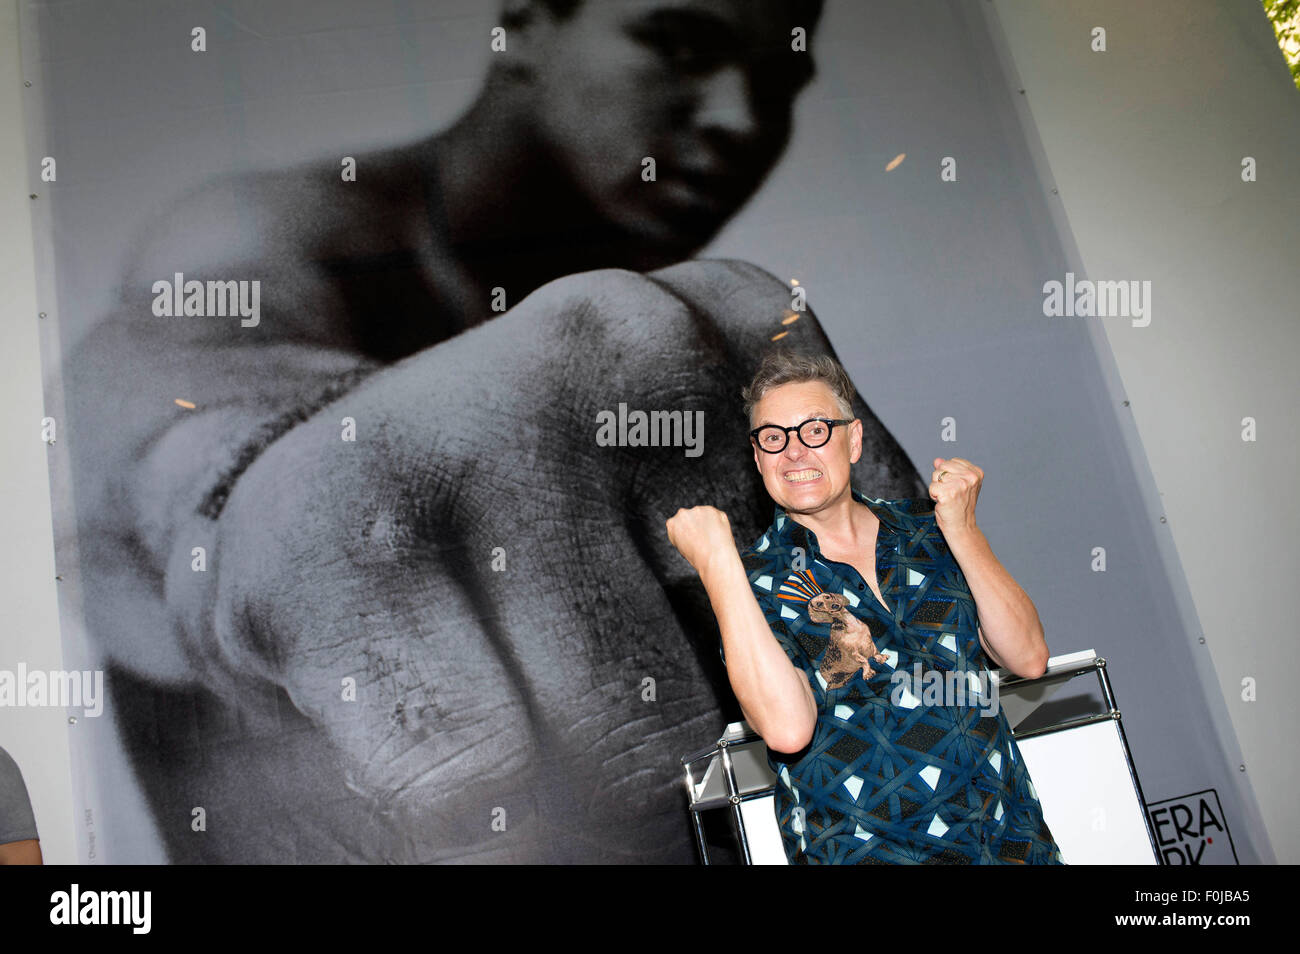 Rolf Scheider assiste il "Muhammad Ali' apertura mostra alla Galerie Camera Work il 14 agosto 2015 a Berlino, Germania./picture alliance Foto Stock